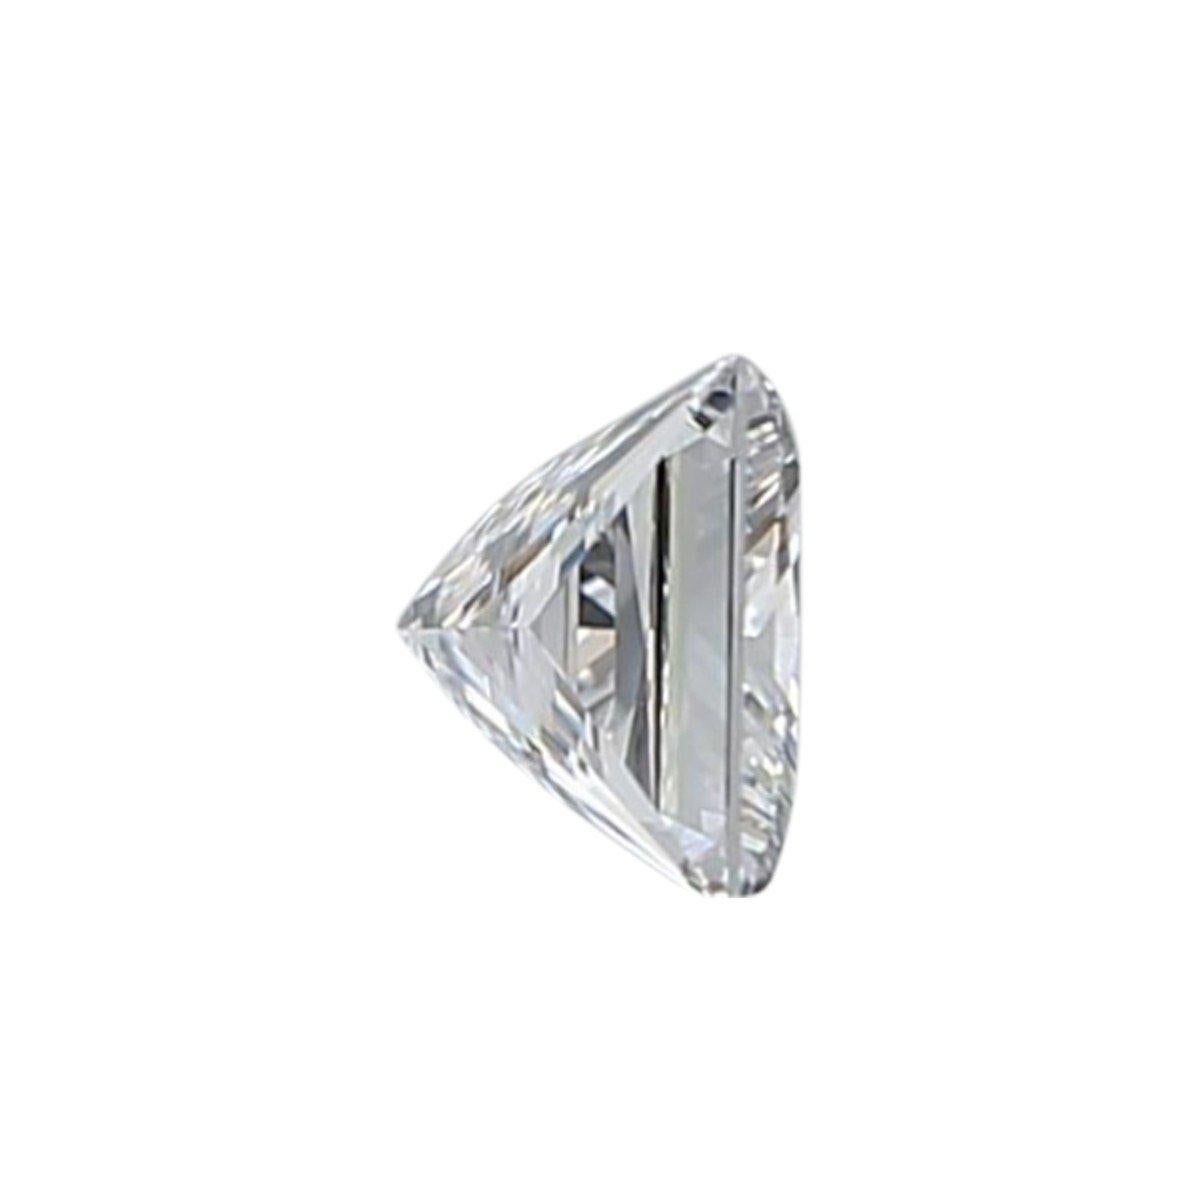 Natürlicher Diamant im Prinzessinnenschliff mit vollem Glanz und Funkeln mit einem Gewicht von 0,81 Karat E VS1 mit GIA-Zertifikat und Laserbeschriftungsnummer.

Obere Marke

GIA 5296667197

Sku: DSPV-279